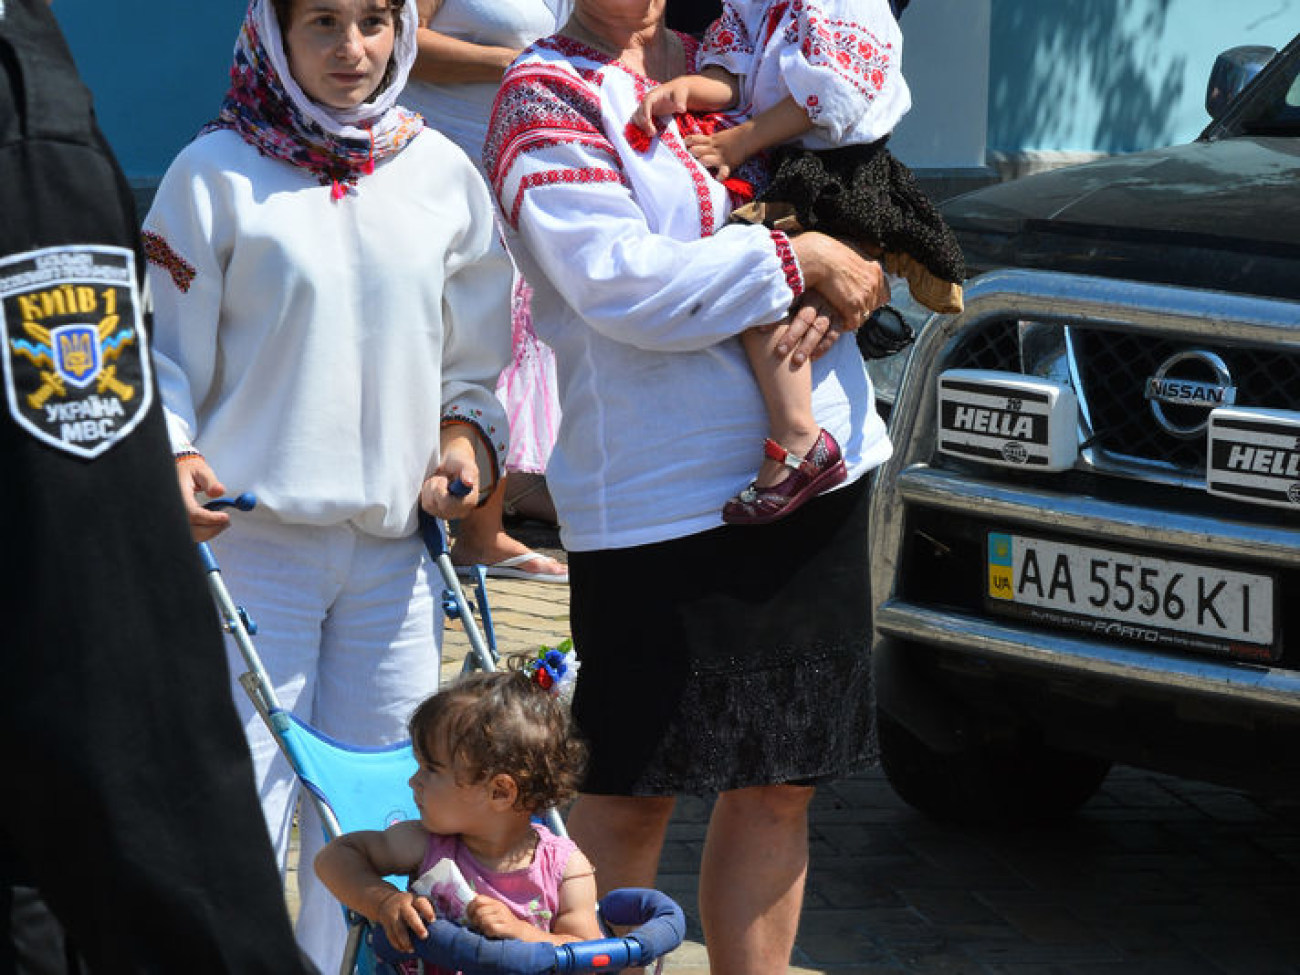 День Крещения Руси в Киеве: крестный ход, массовые пожертвования и вышиванки, 28 июля 2014г.